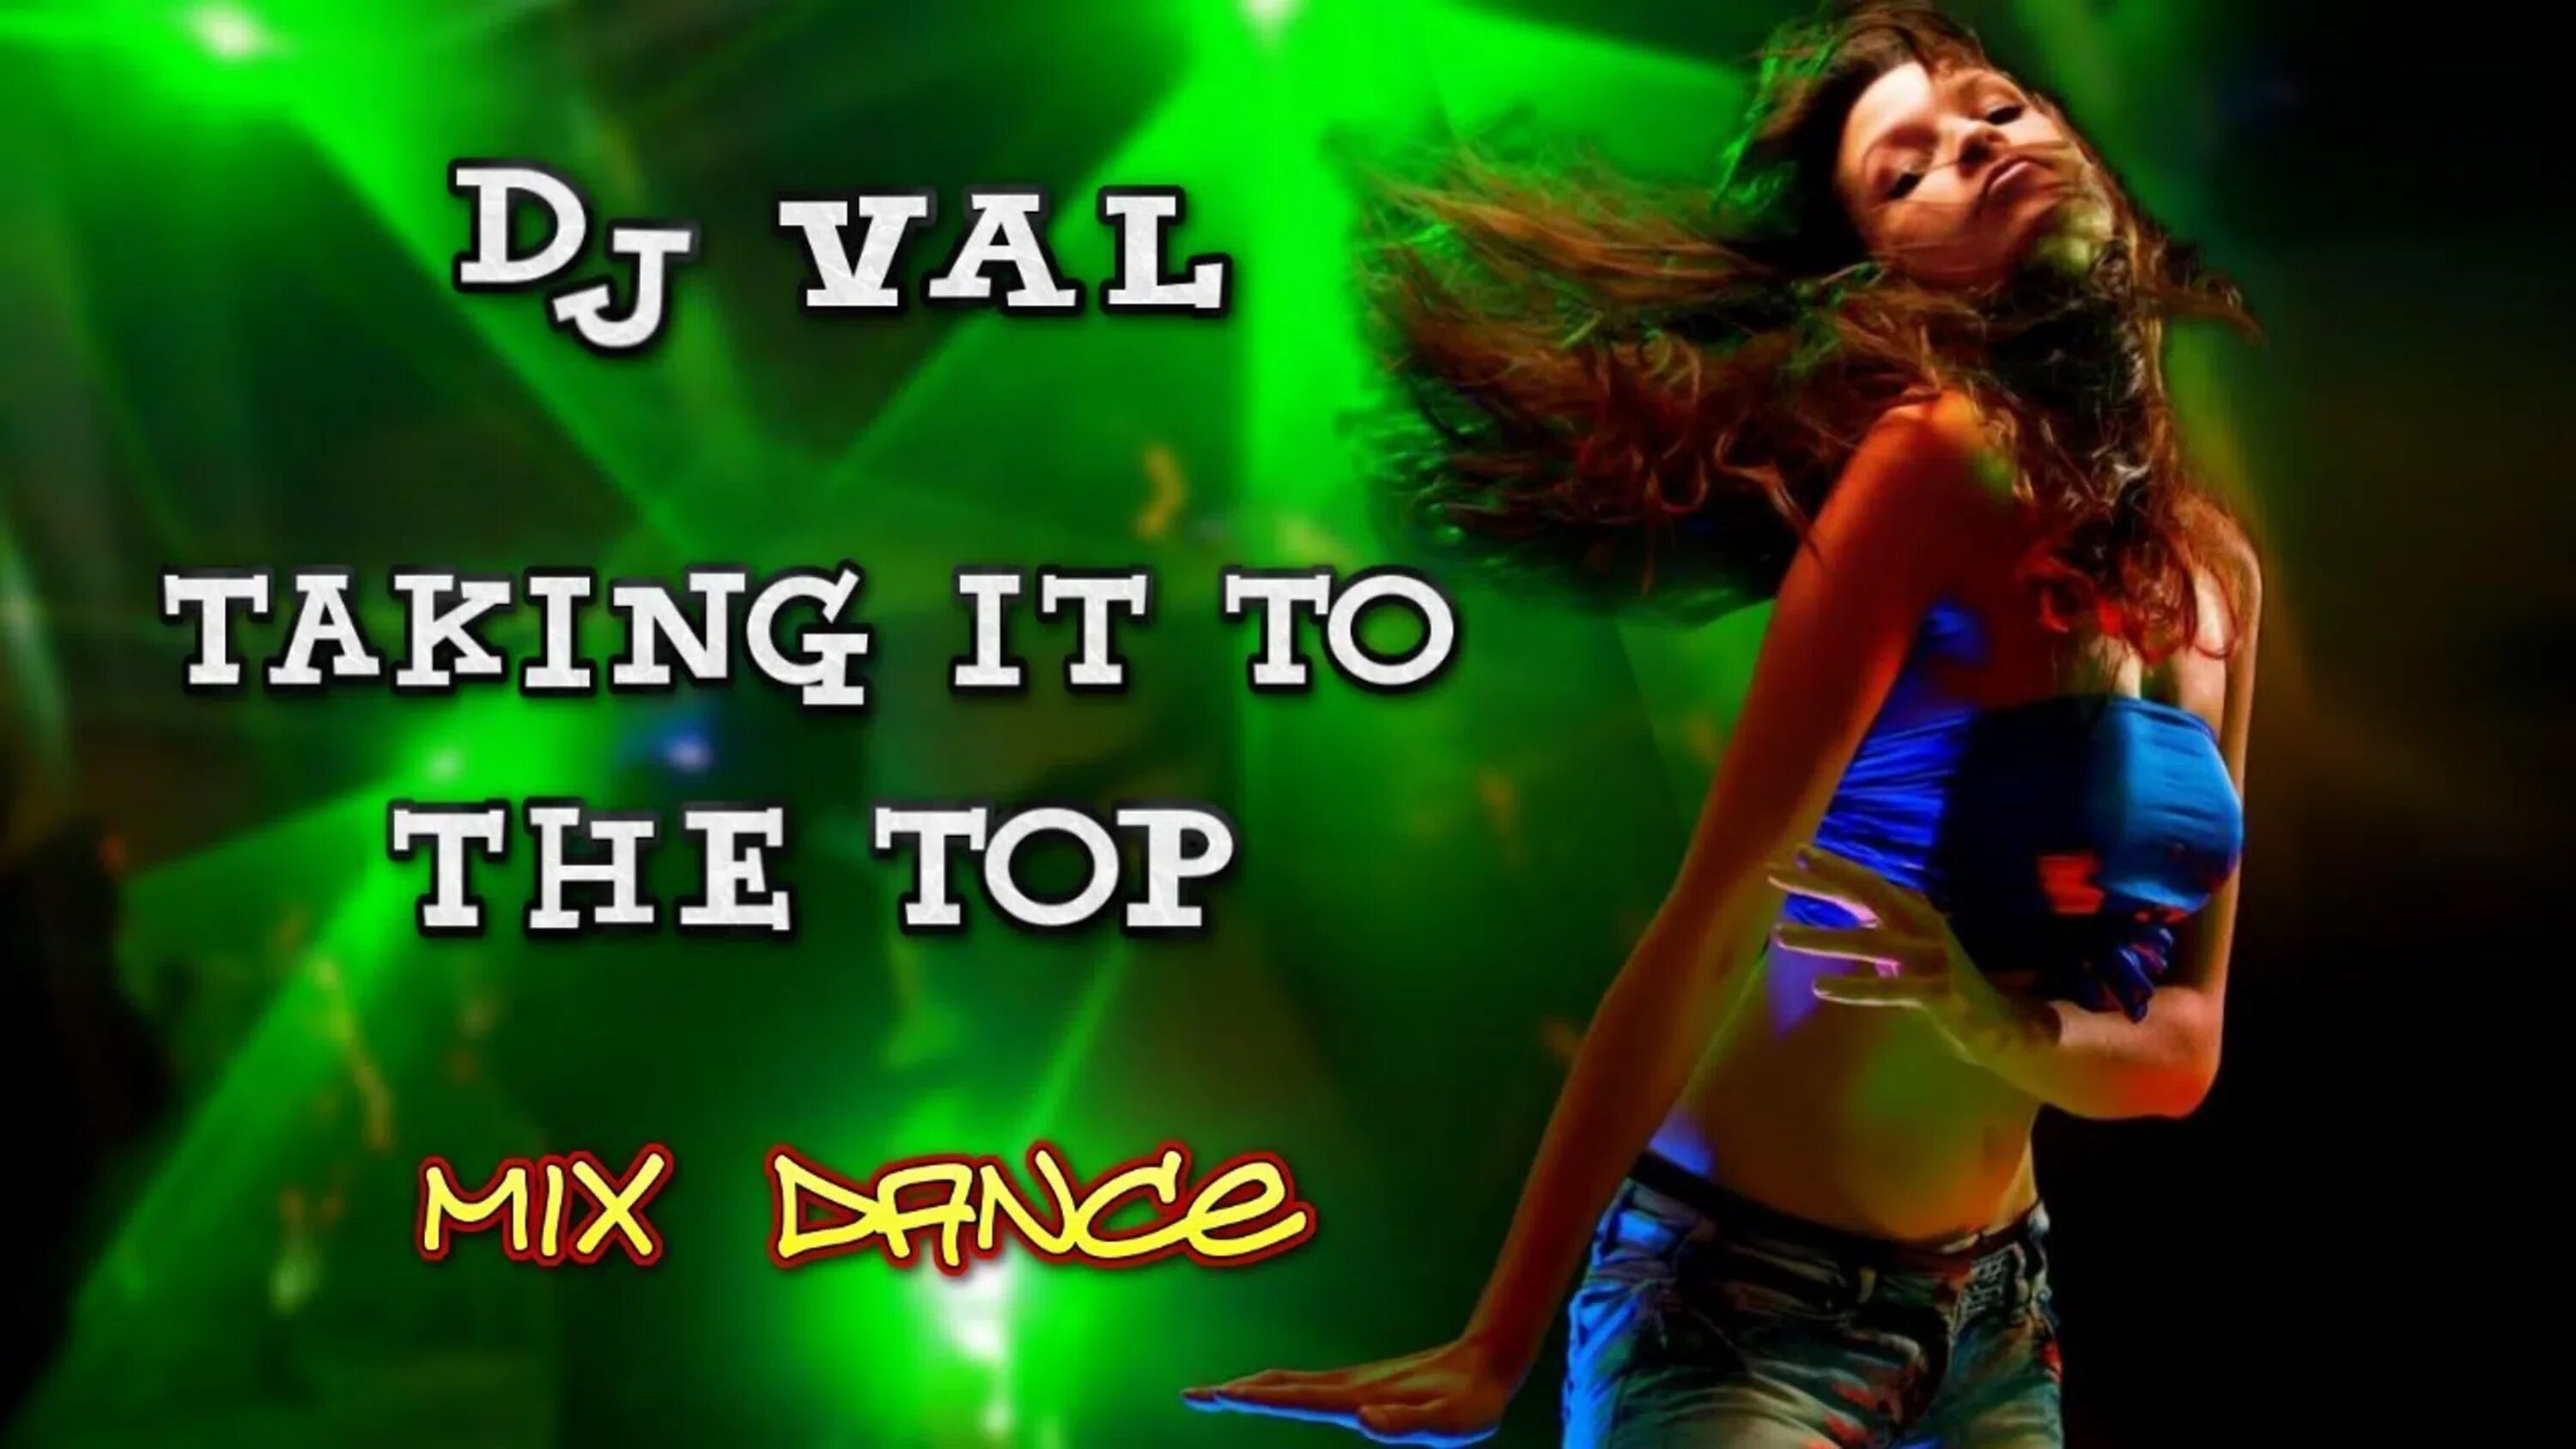 Dj val mp3 все песни. DJ Val - taking it to the Top. Евродэнс DJ Val. DJ Val i like. DJ Val Remix.